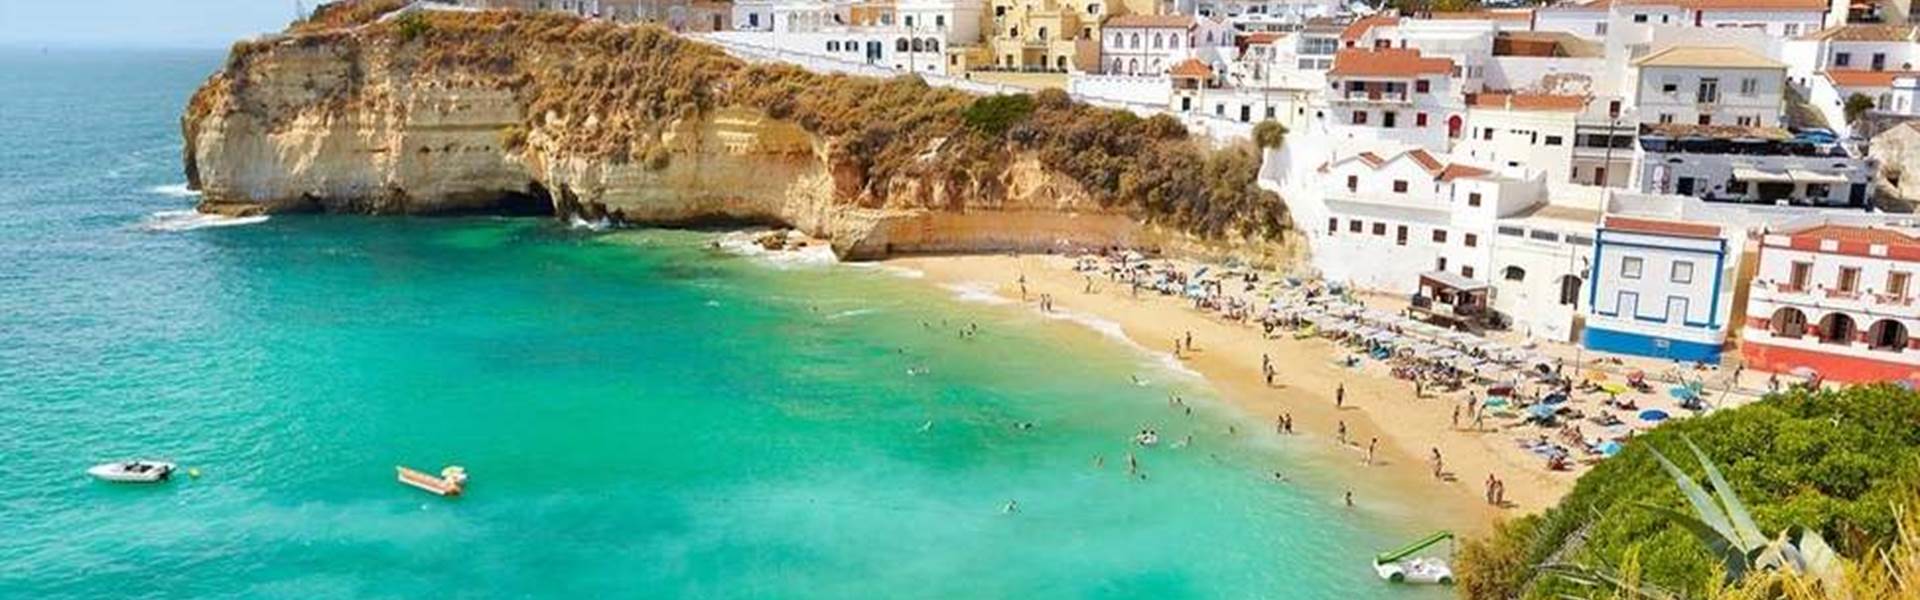 Immobilien, Verkauf, Verkauf, kaufen Tipps, Algarve, bester Preis, bester deal